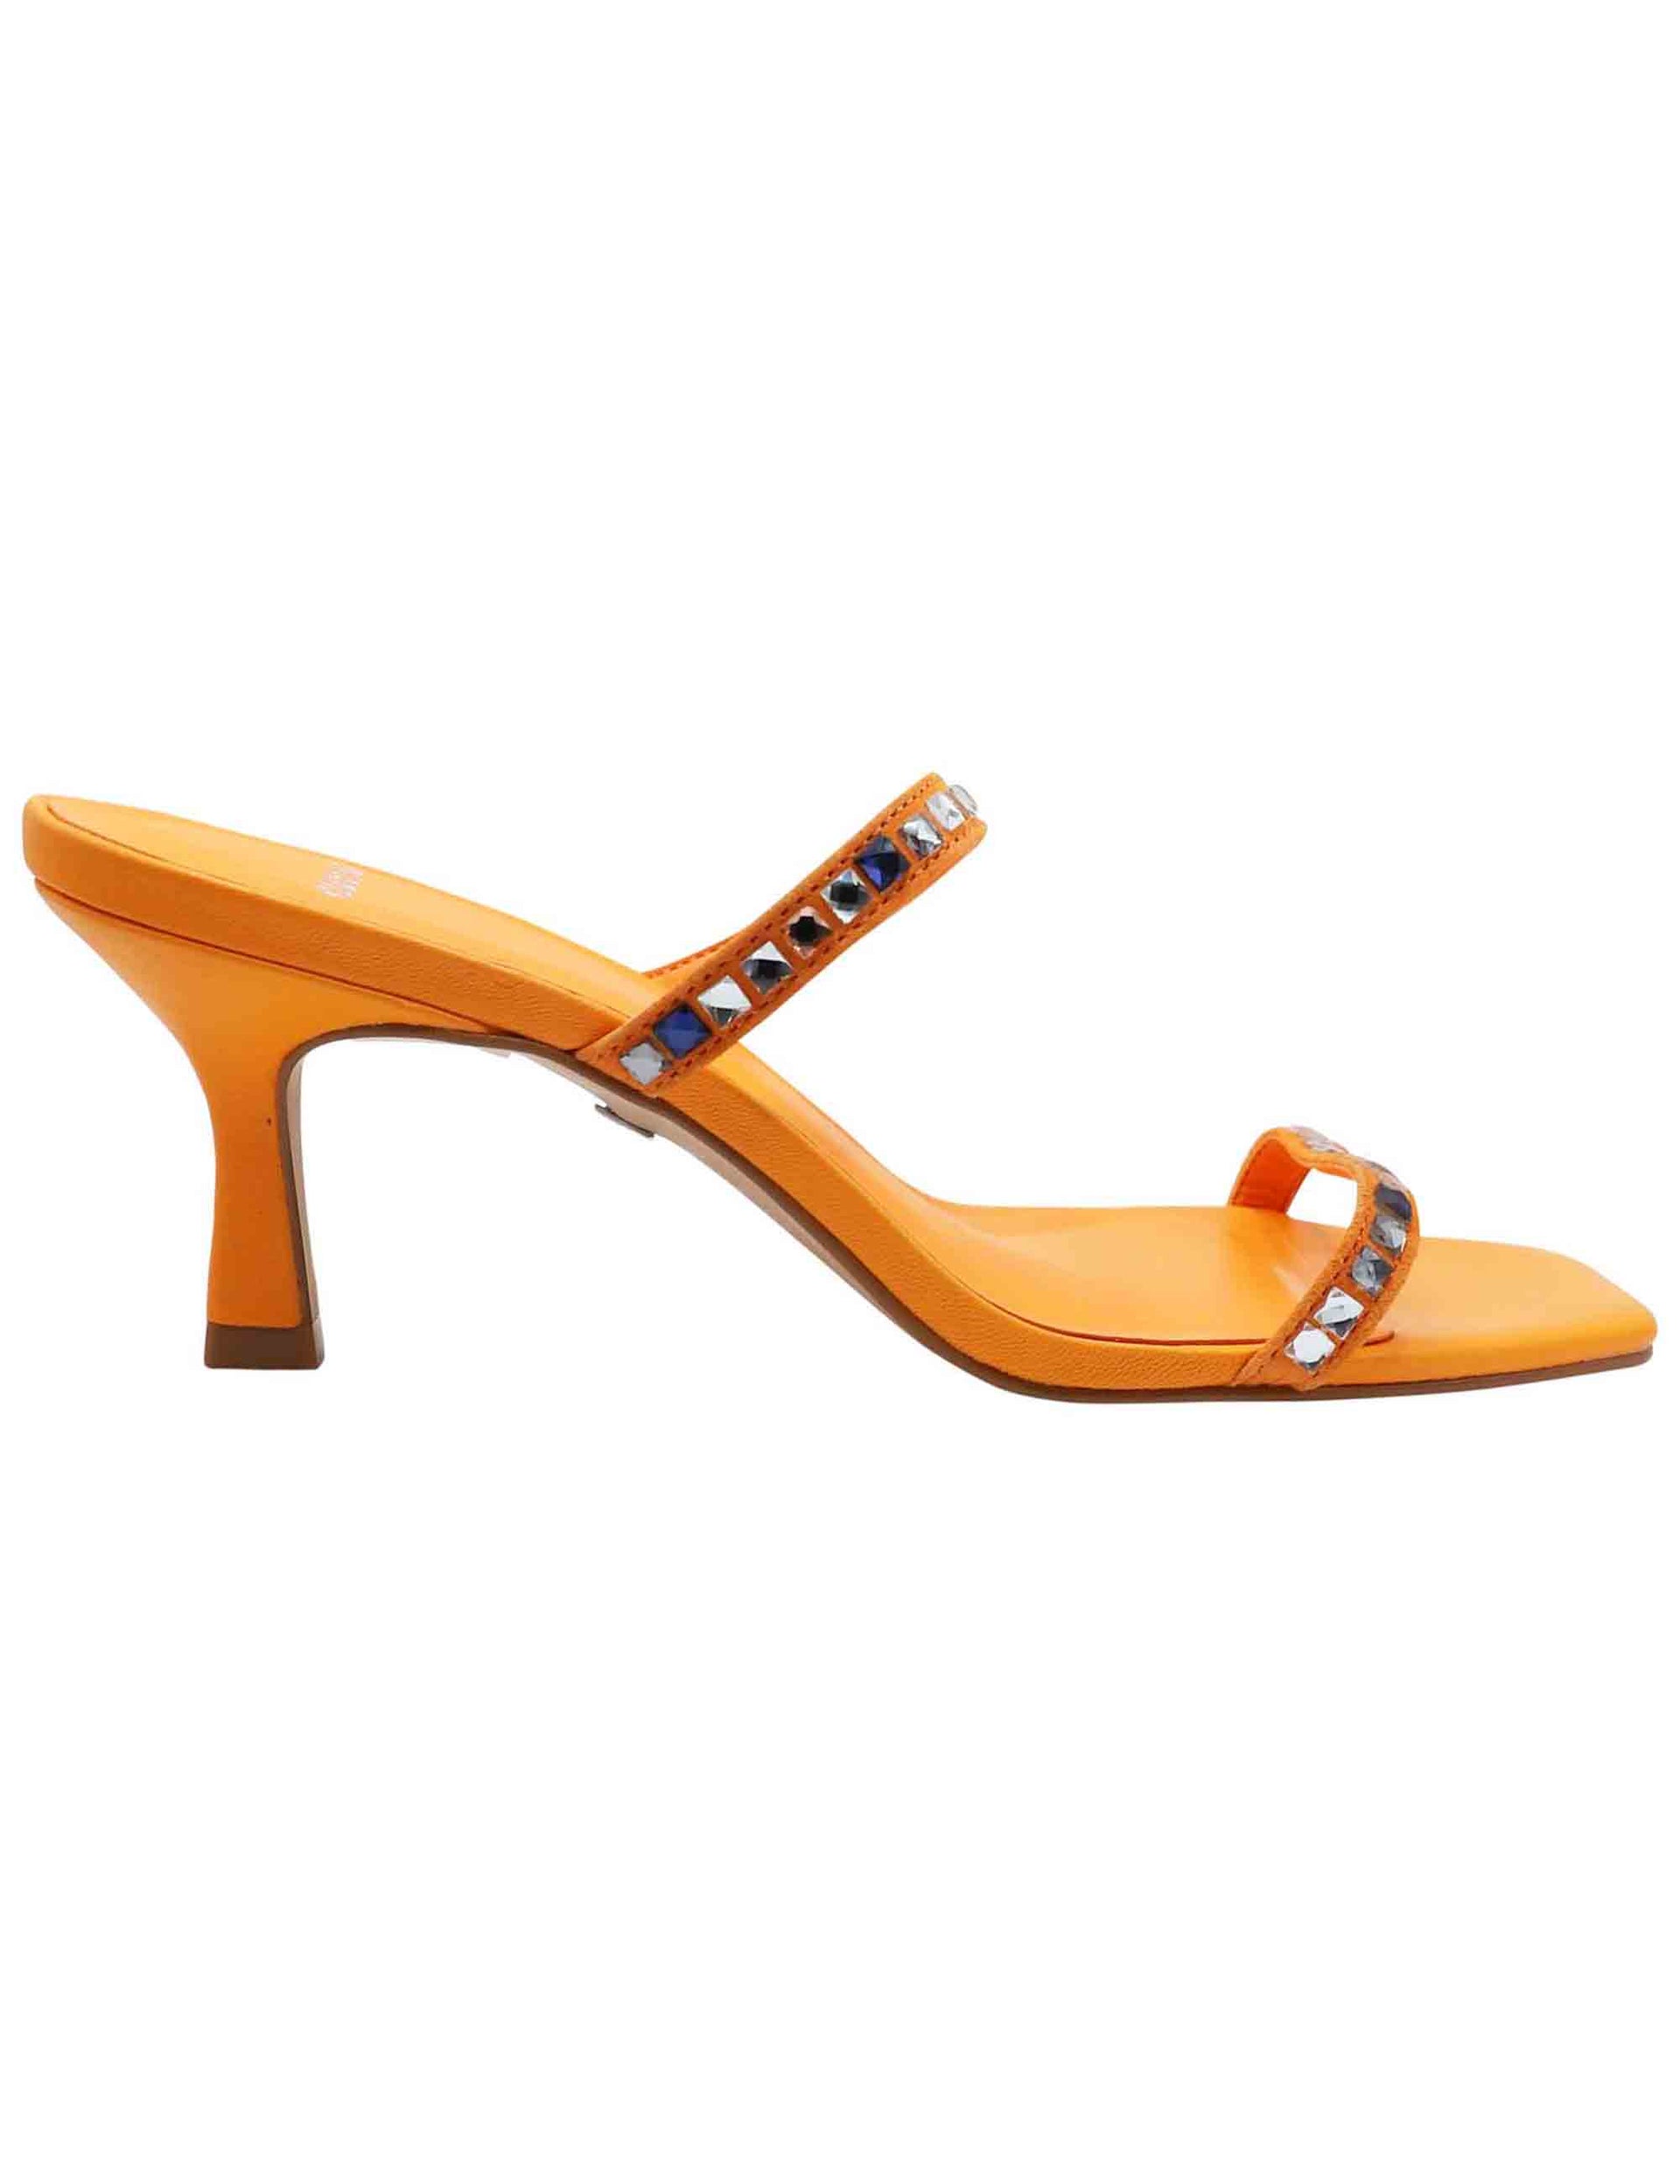 Sandali donna in pelle arancione con doppia fascia in strass e punta quadra